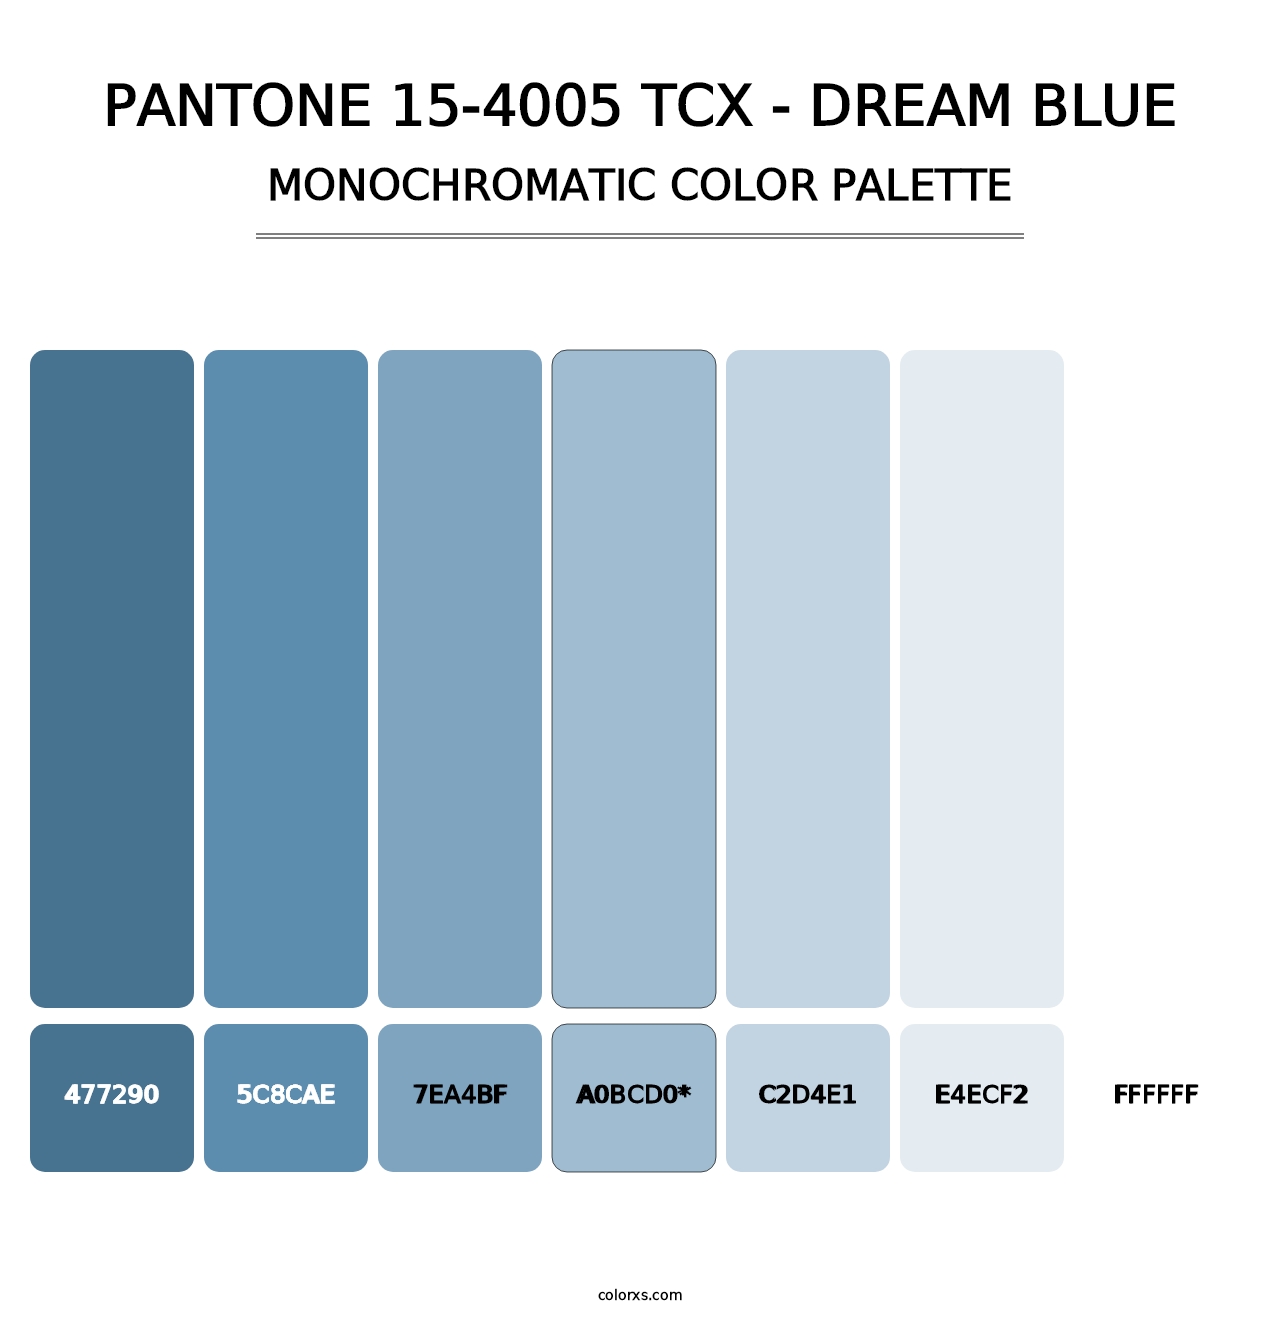 PANTONE 15-4005 TCX - Dream Blue - Monochromatic Color Palette